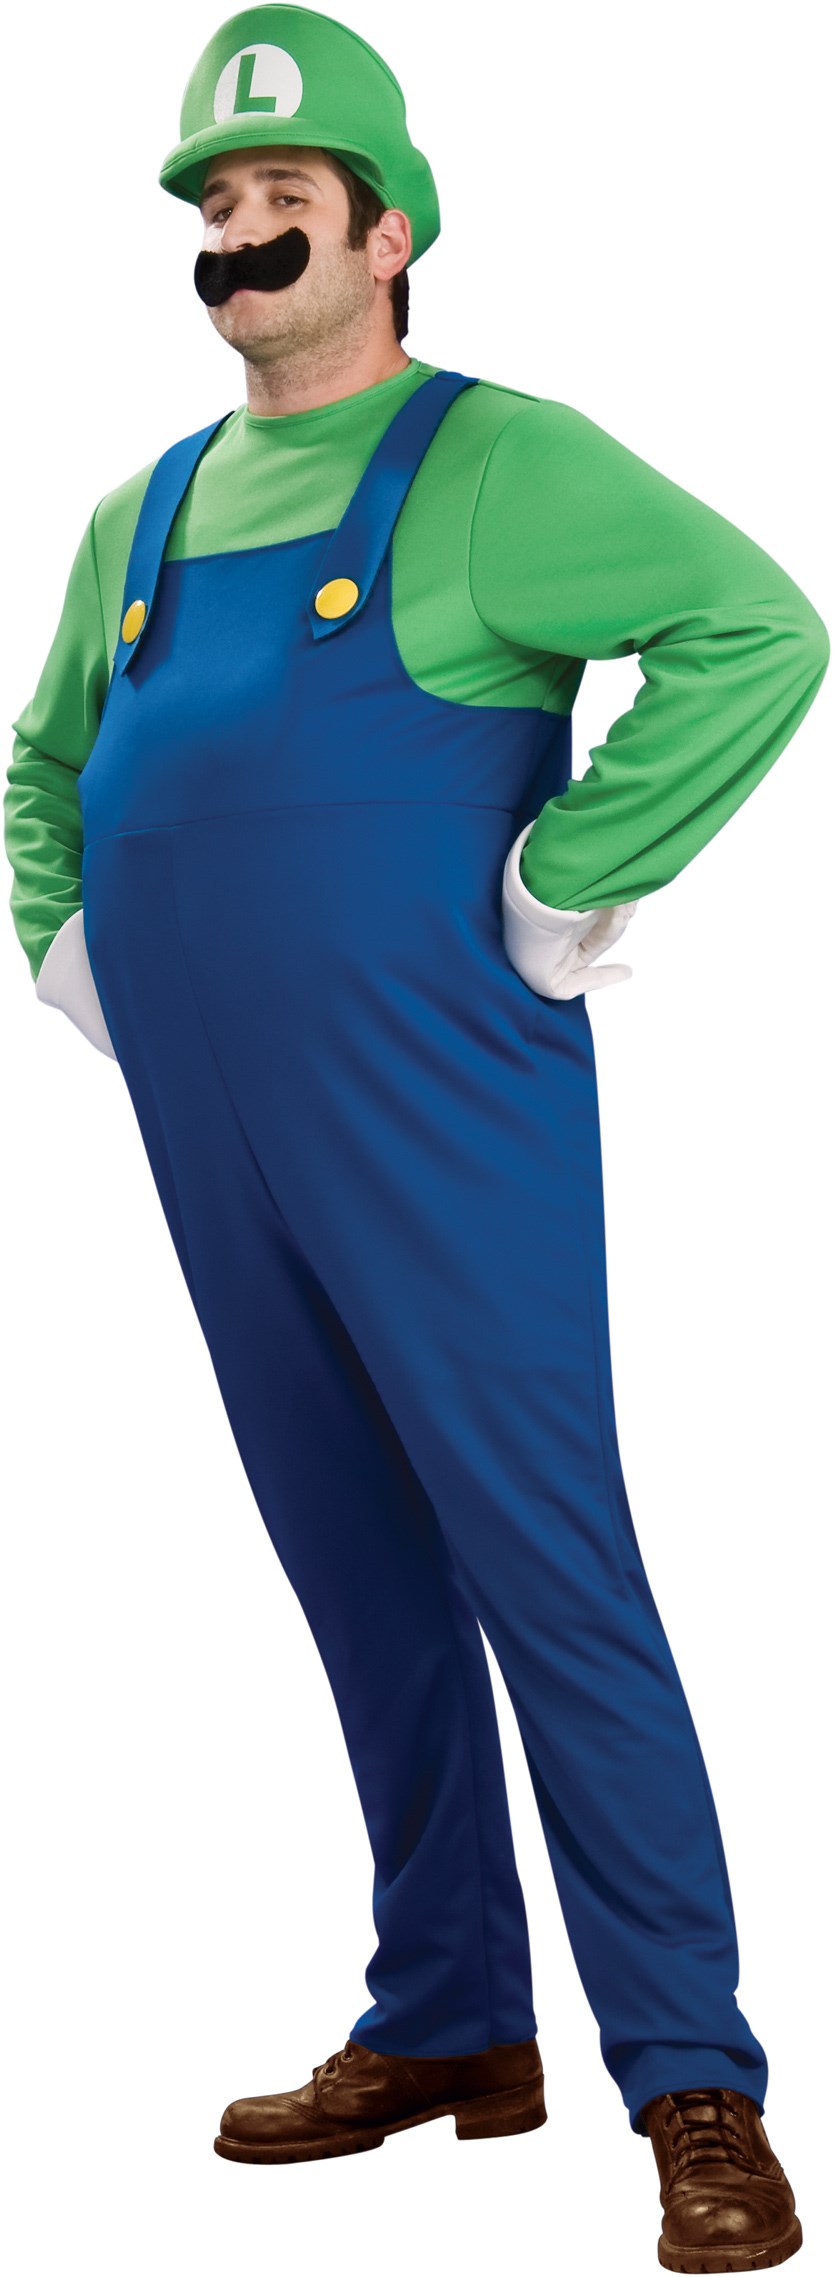 Super Mario Bros. - Deluxe Luigi Adult Plus Costume